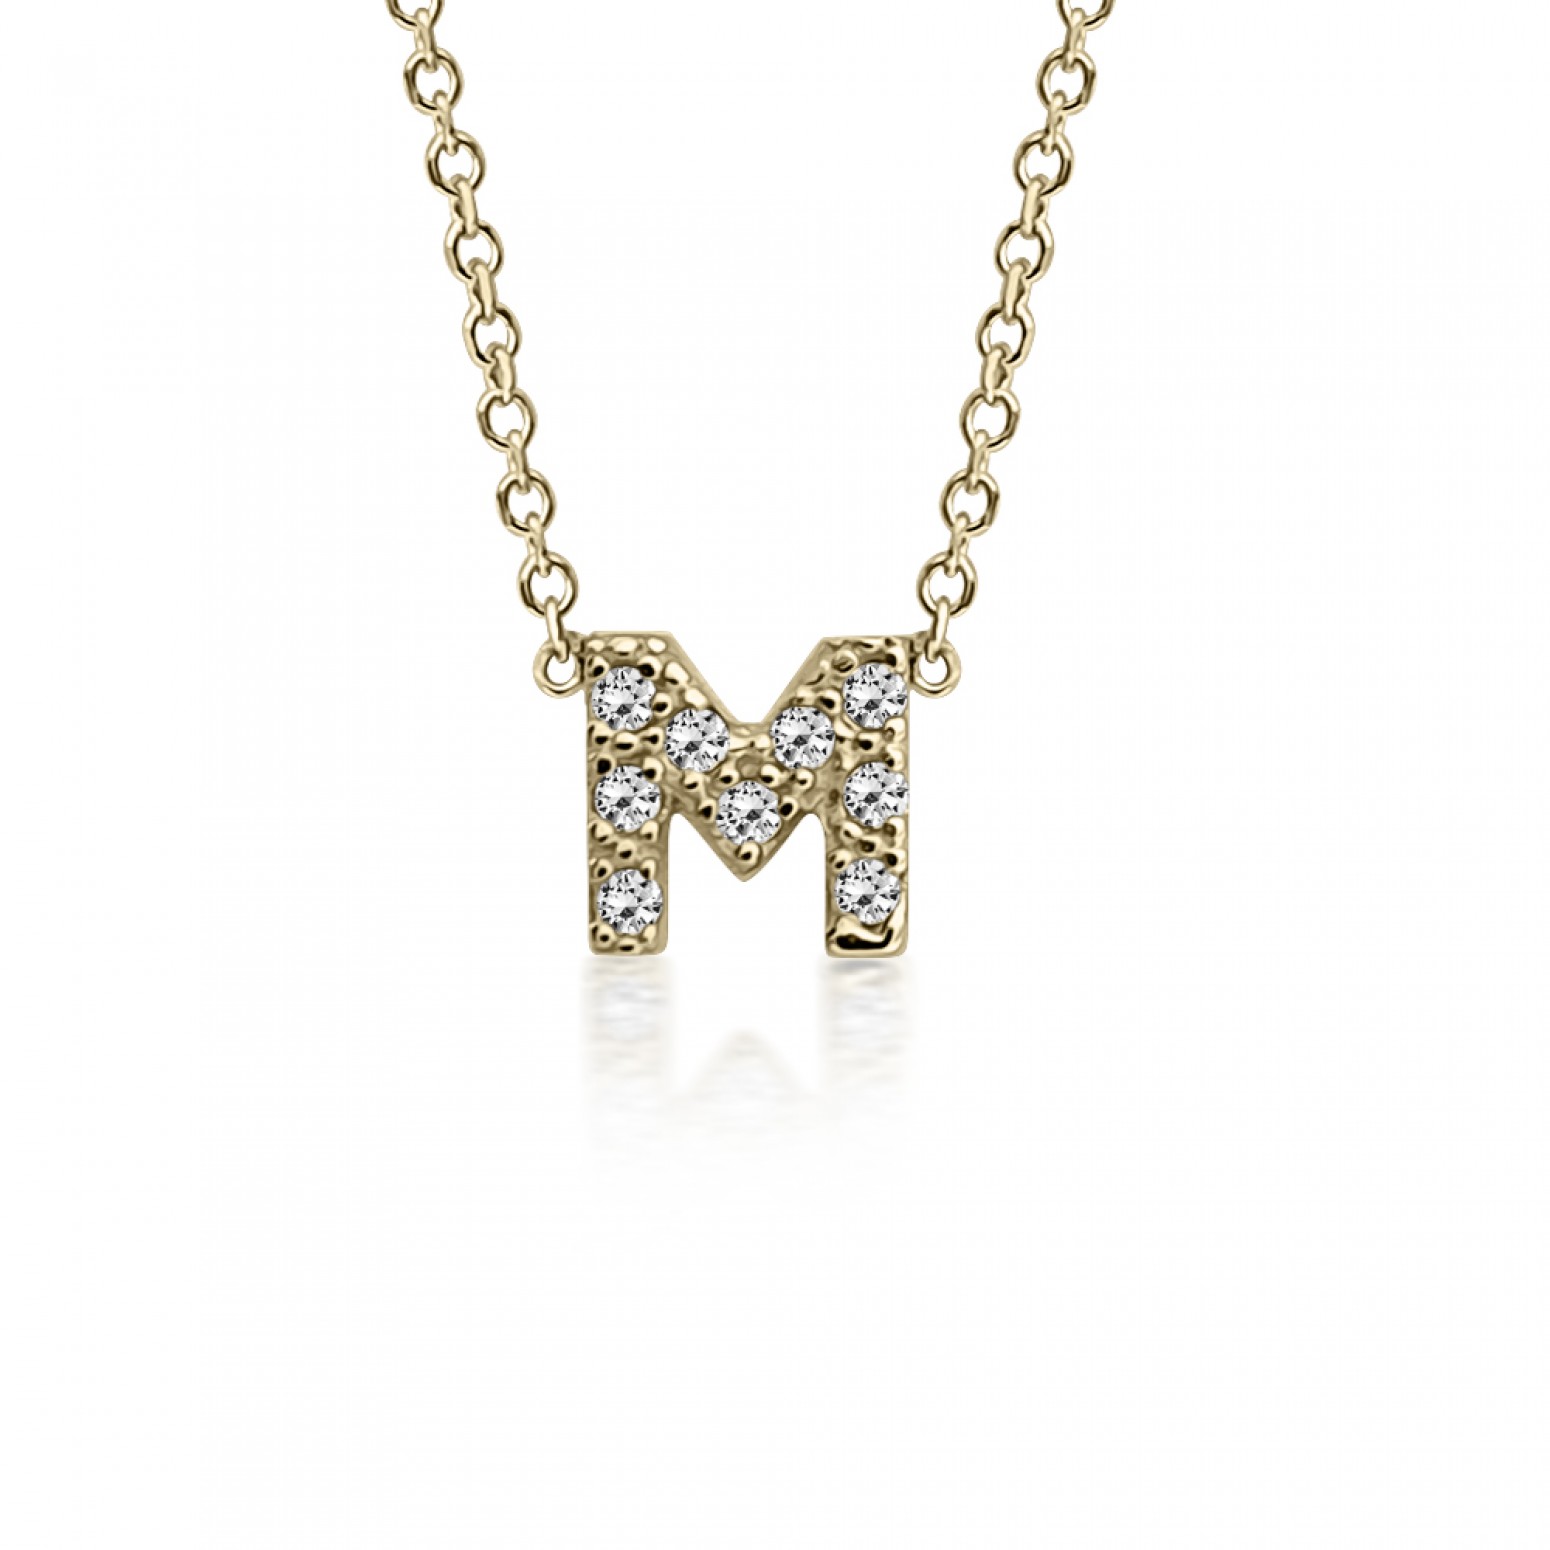 Monogram necklace Μ, Κ14 gold with zircon, ko5198 NECKLACES Κοσμηματα - chrilia.gr